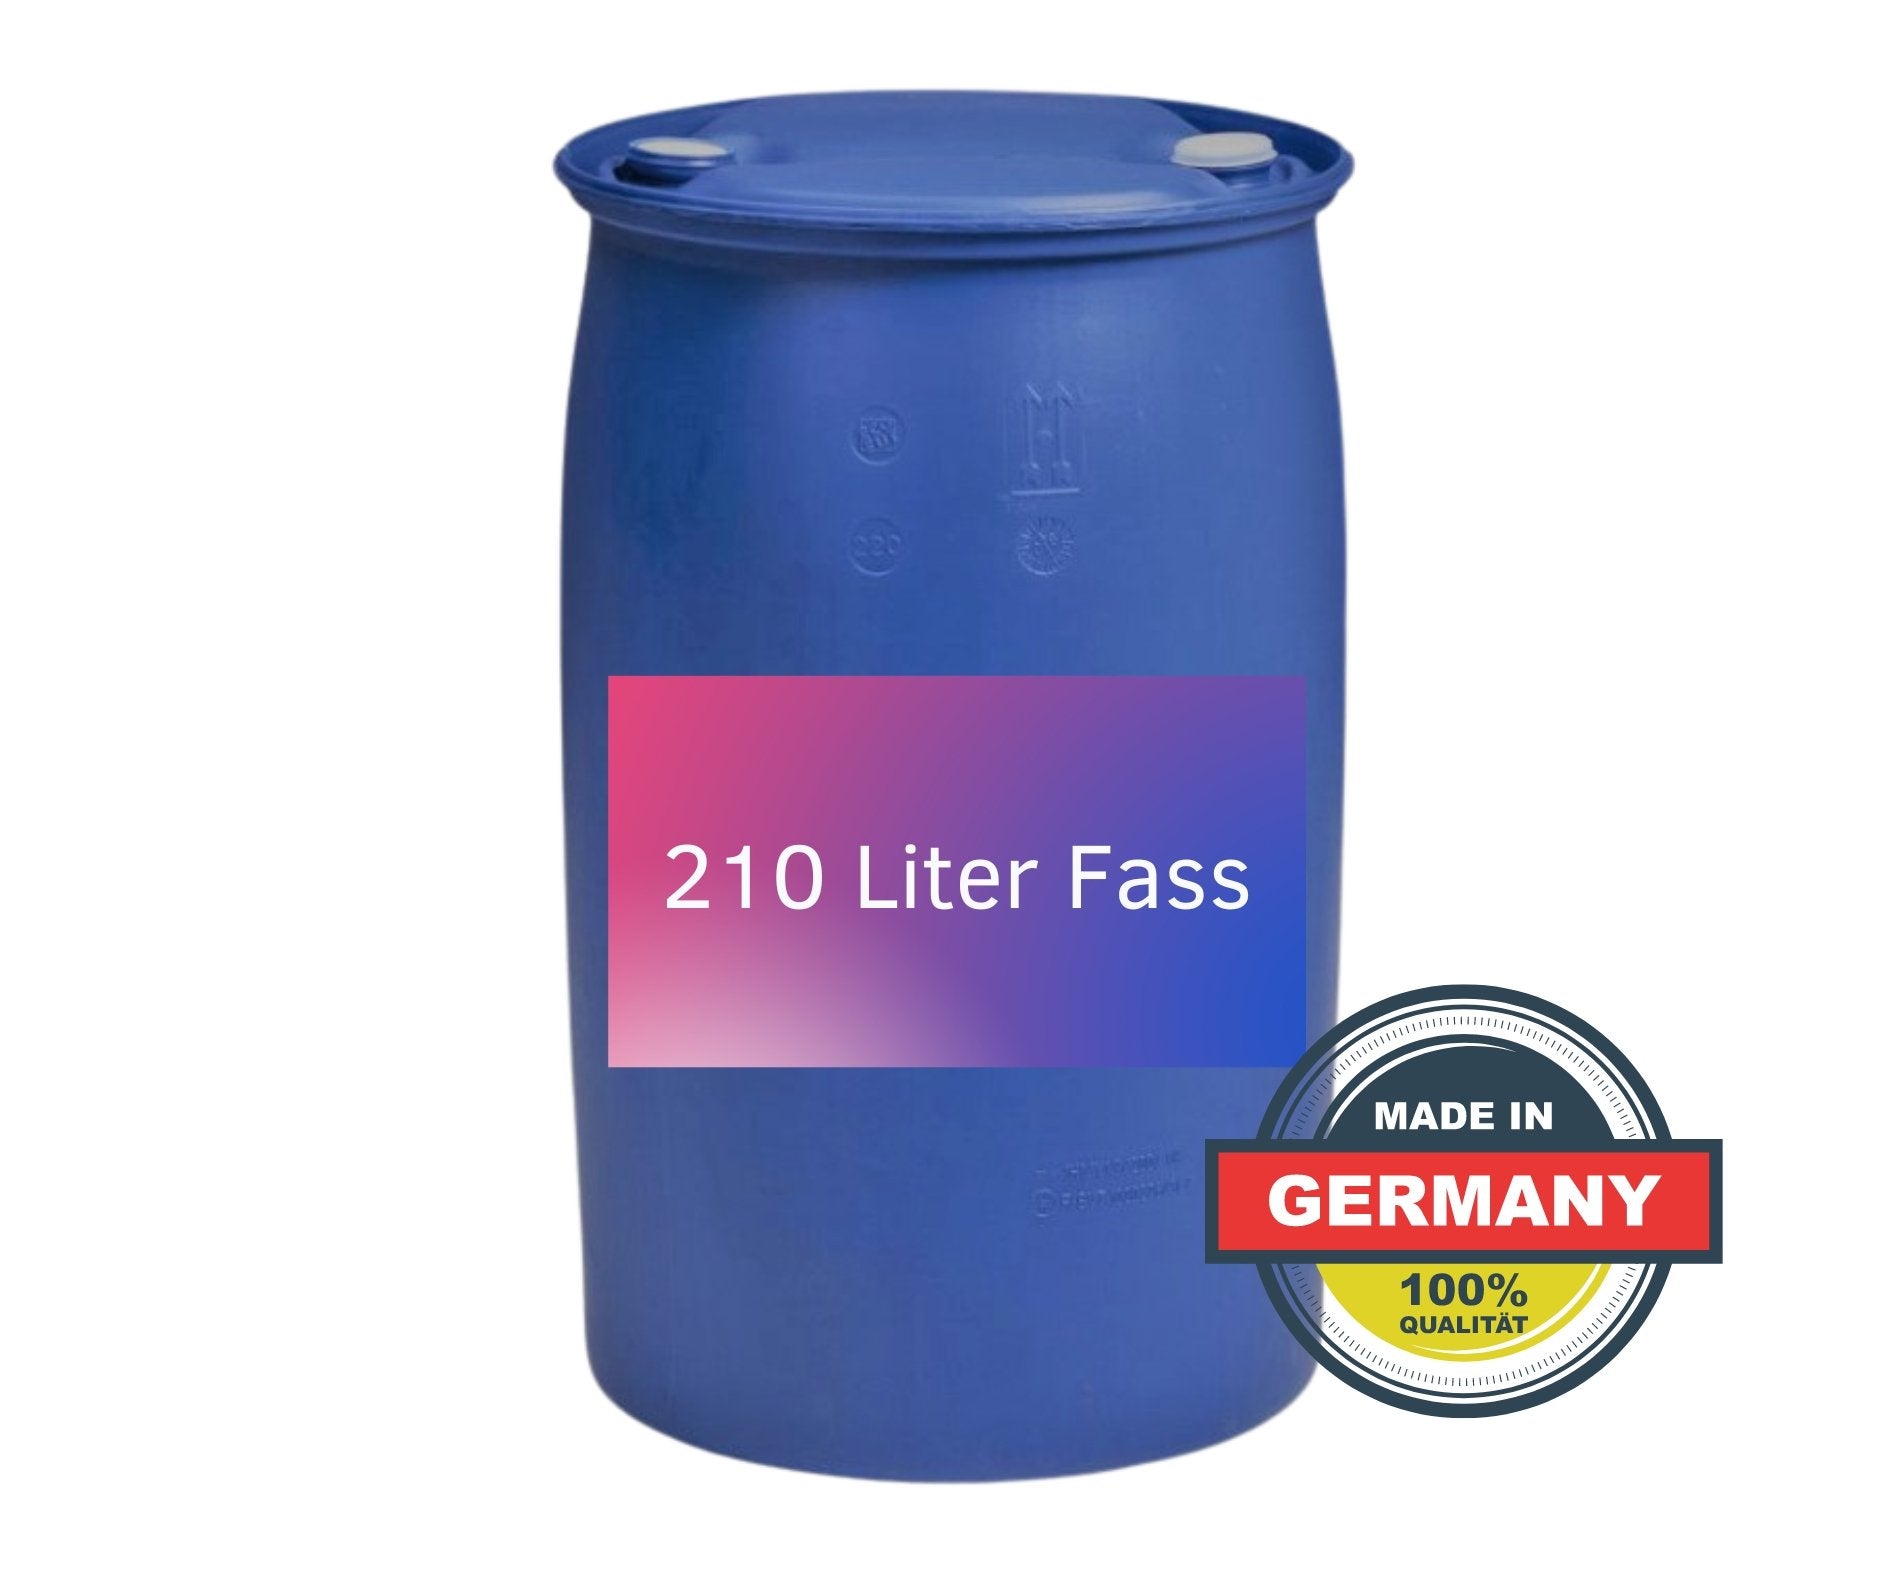 Bremsenreiniger ohne Aceton | 210 Liter Fass | Made in Germany | Allrein-Ofra - fivestartoolshop.com